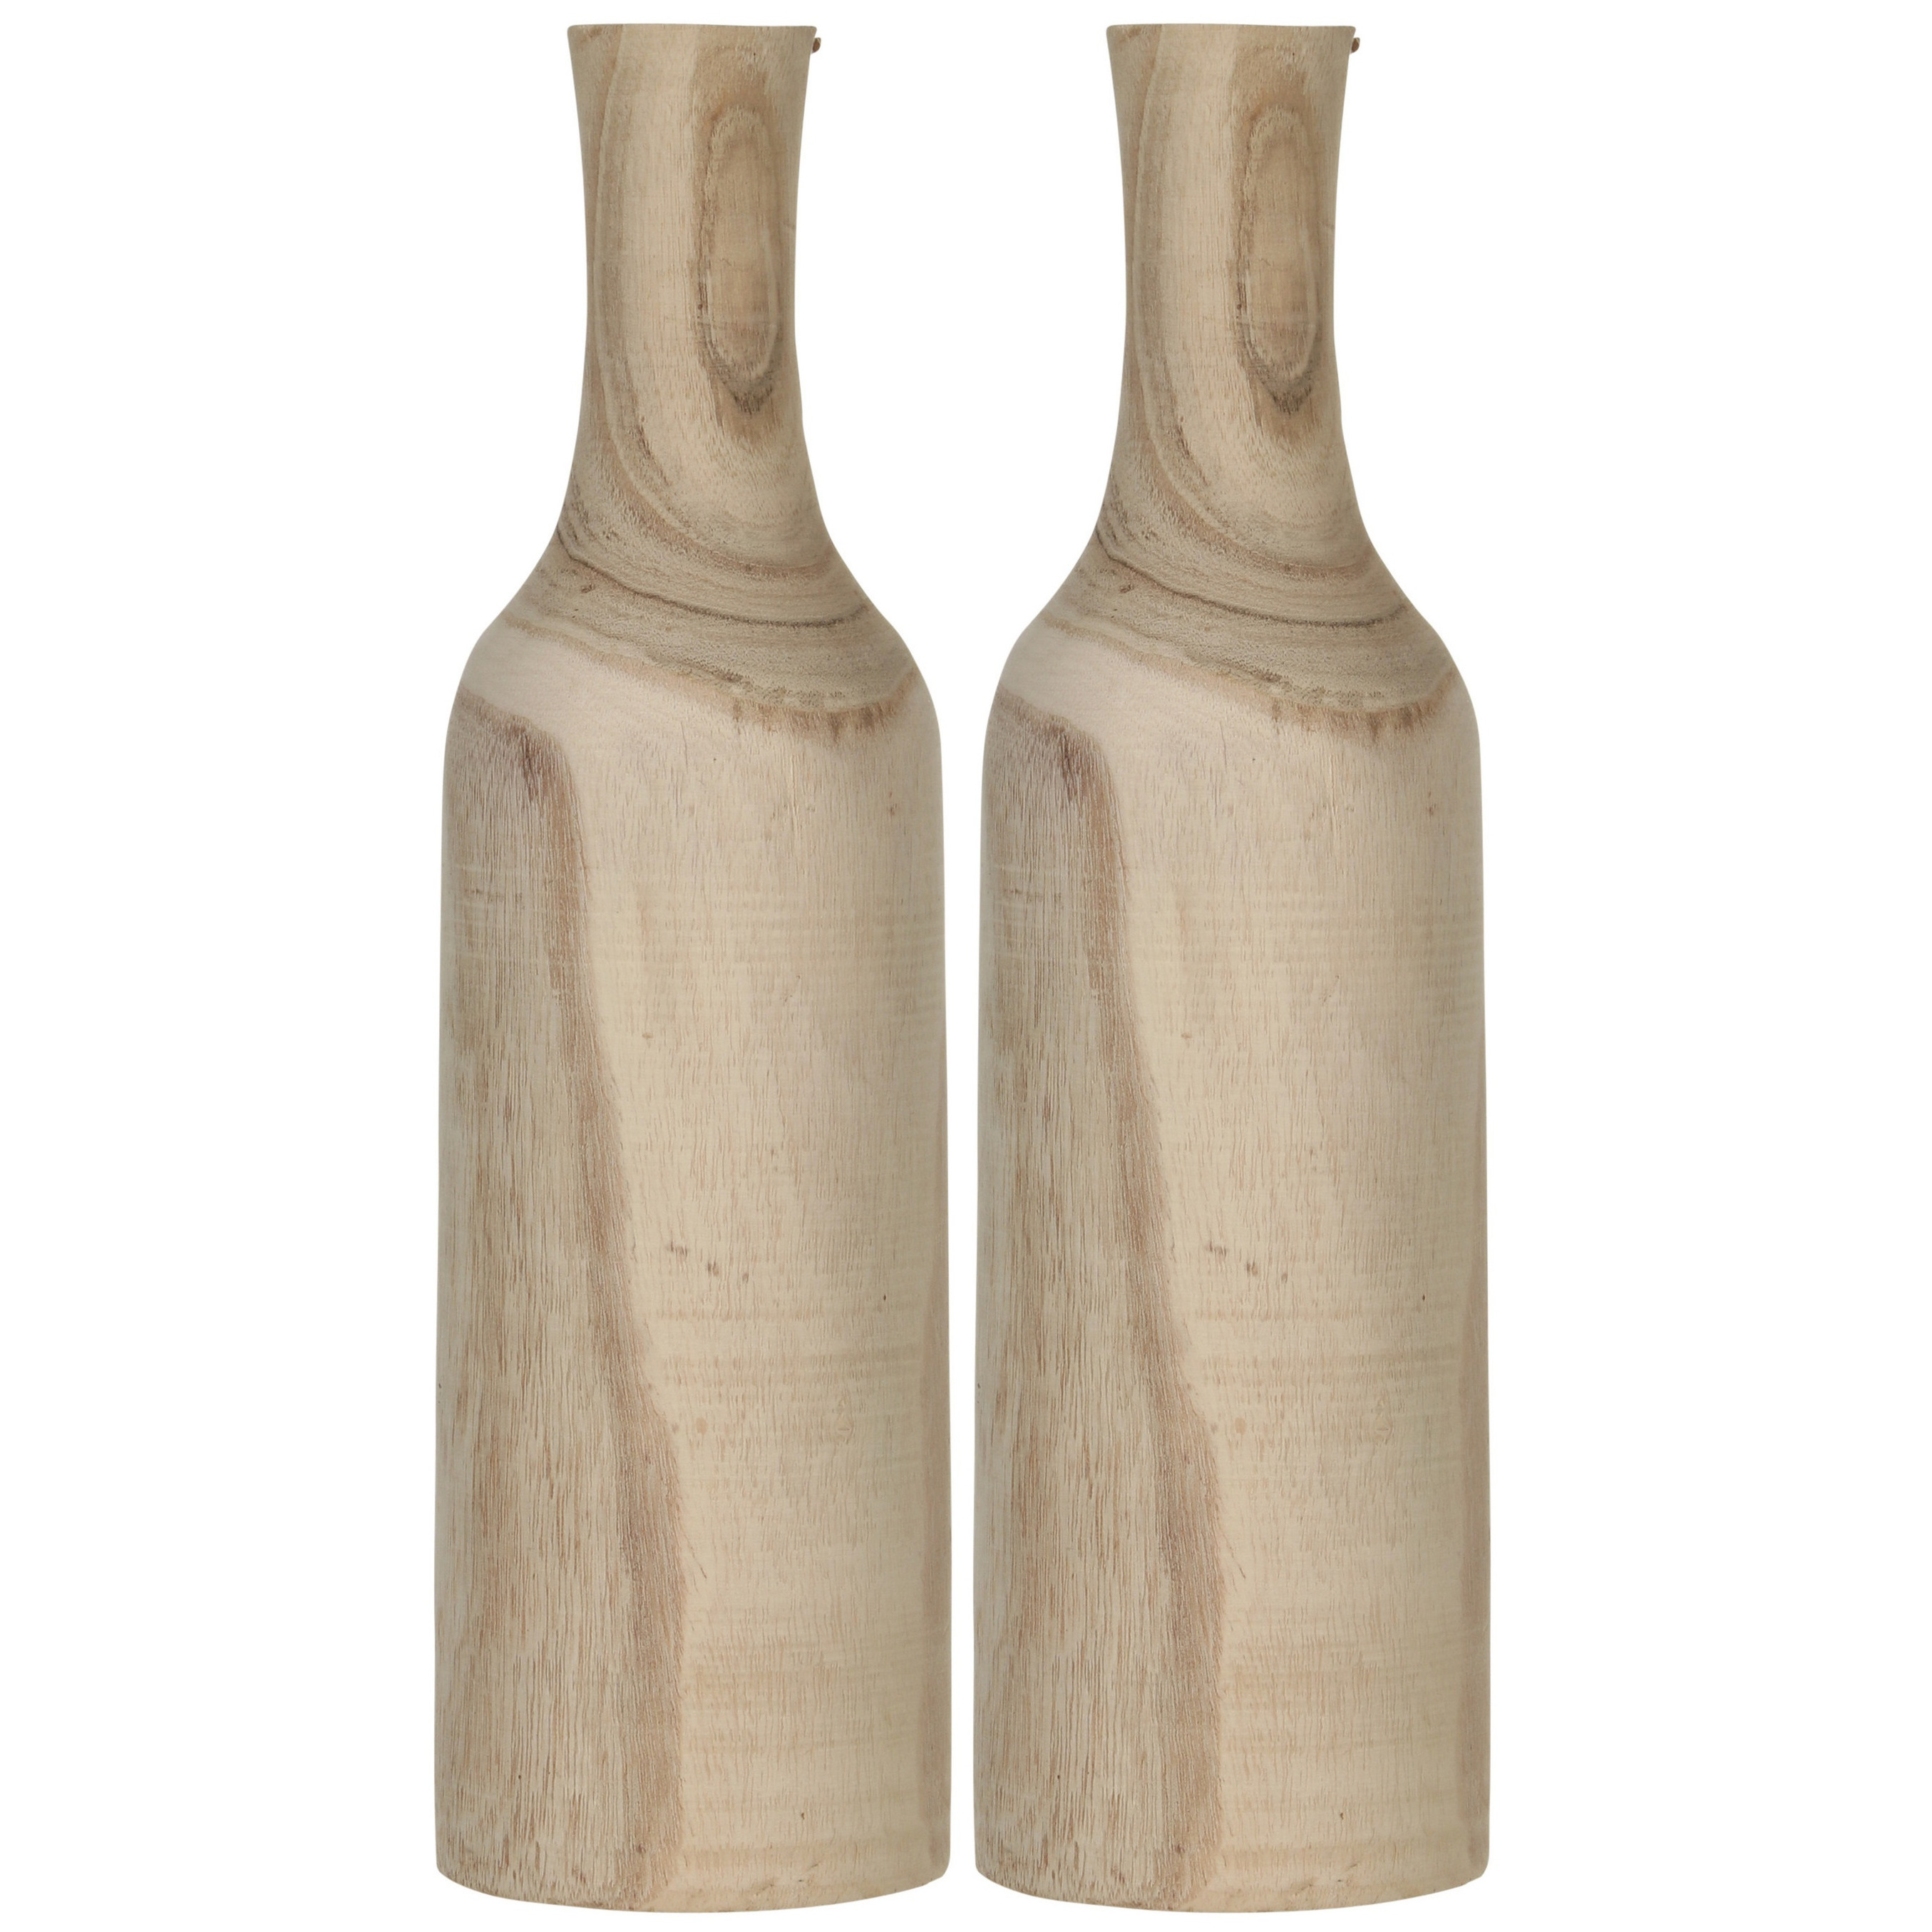 2x Decoratie fles vaas-vazen van hout 47 x 14 cm bruin